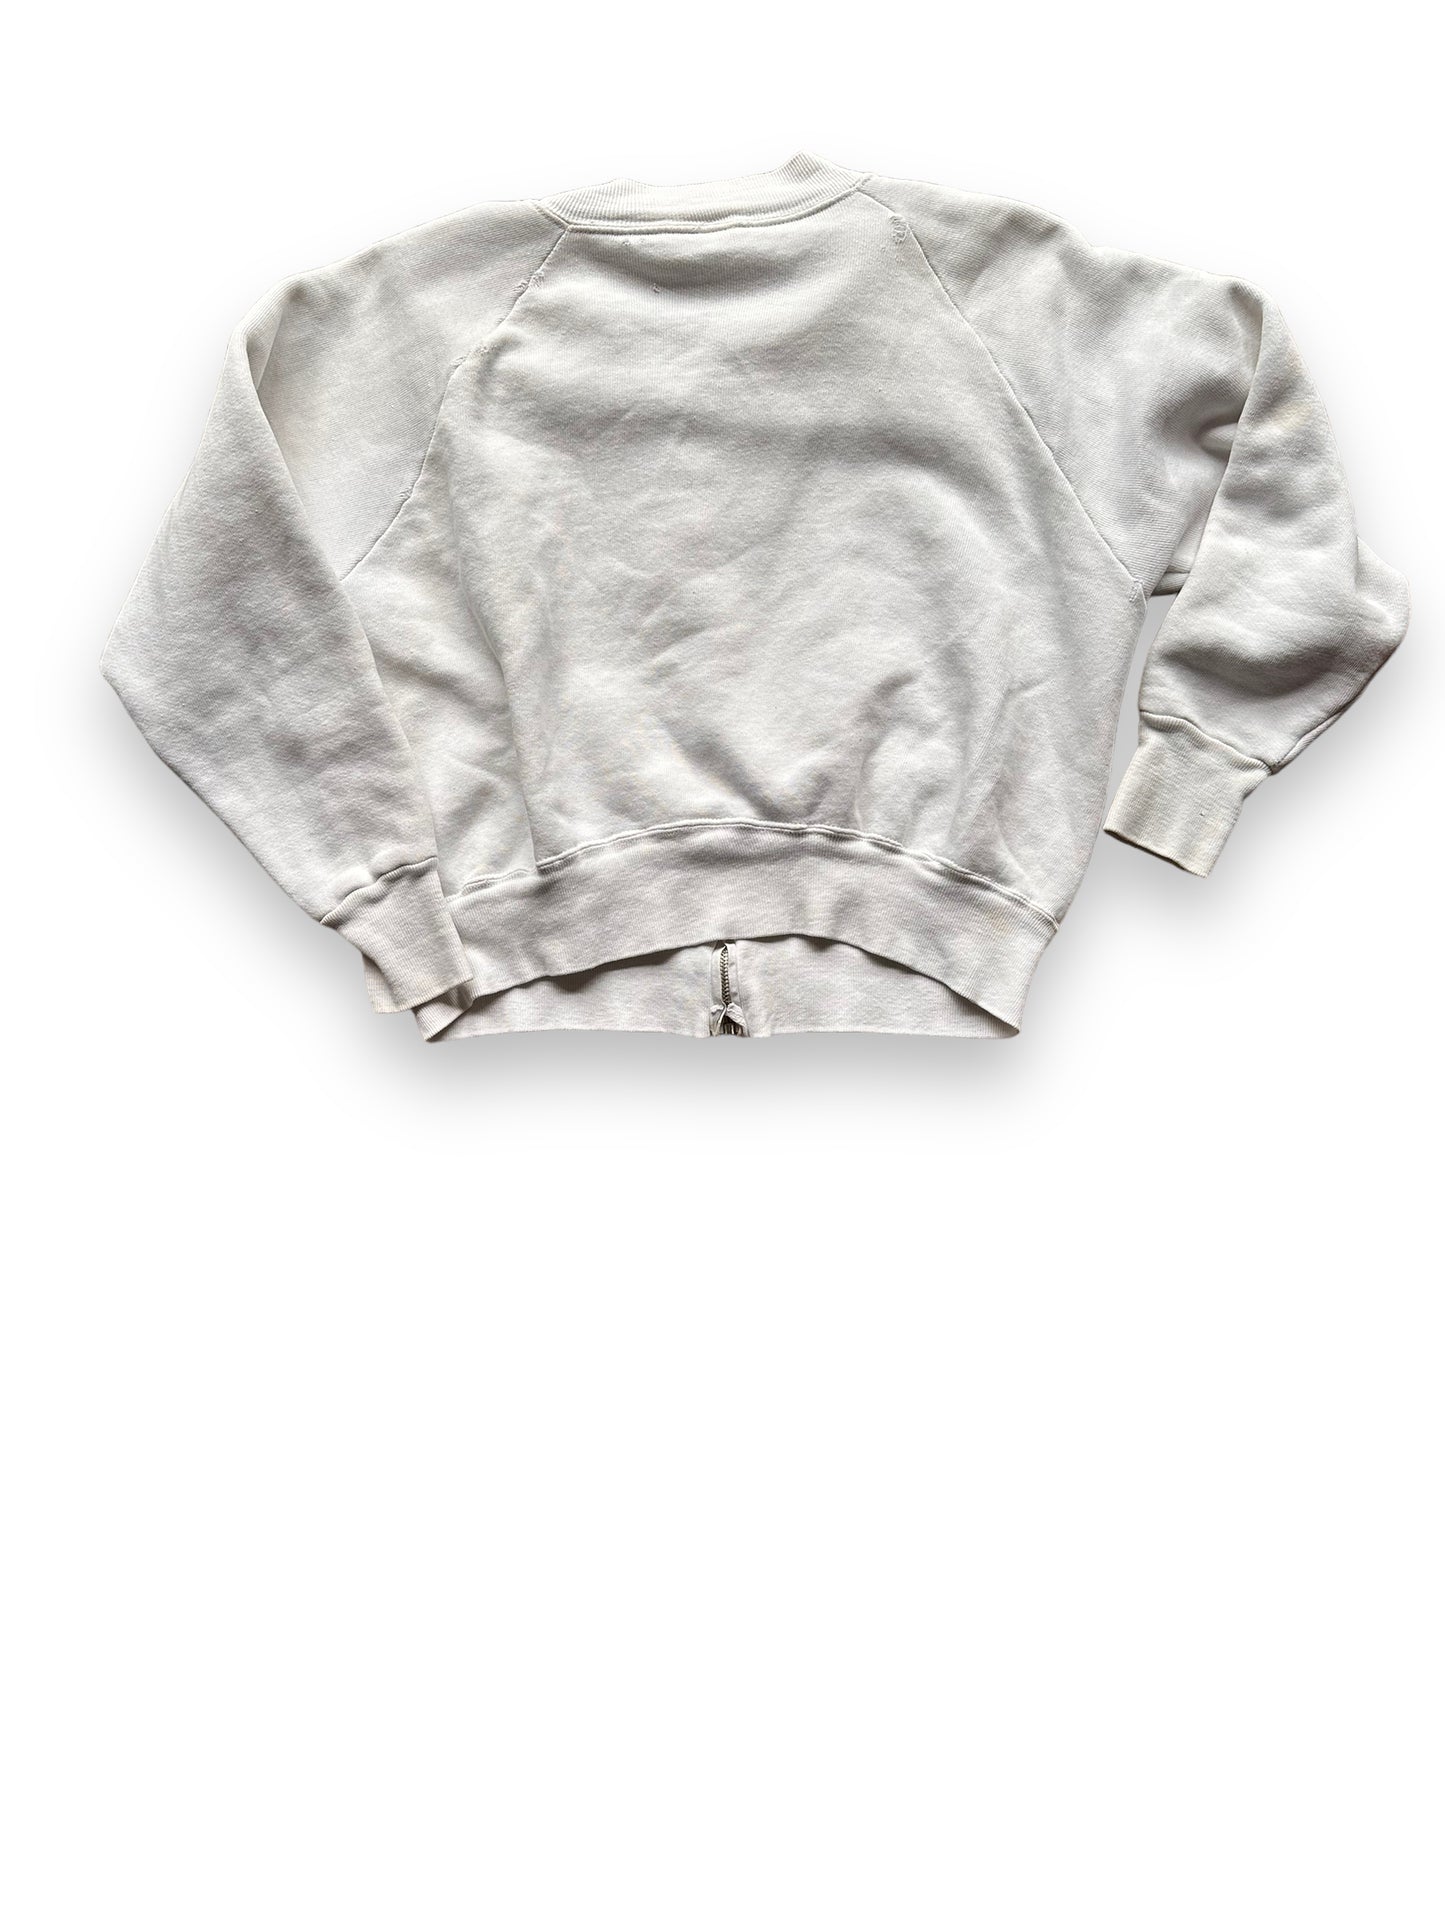 Rear View of Vintage Russell Quality Sportswear Zip Up Sweatshirt SZ XL | Vintage Sweatshirt Seattle | Barn Owl Vintage Seattle